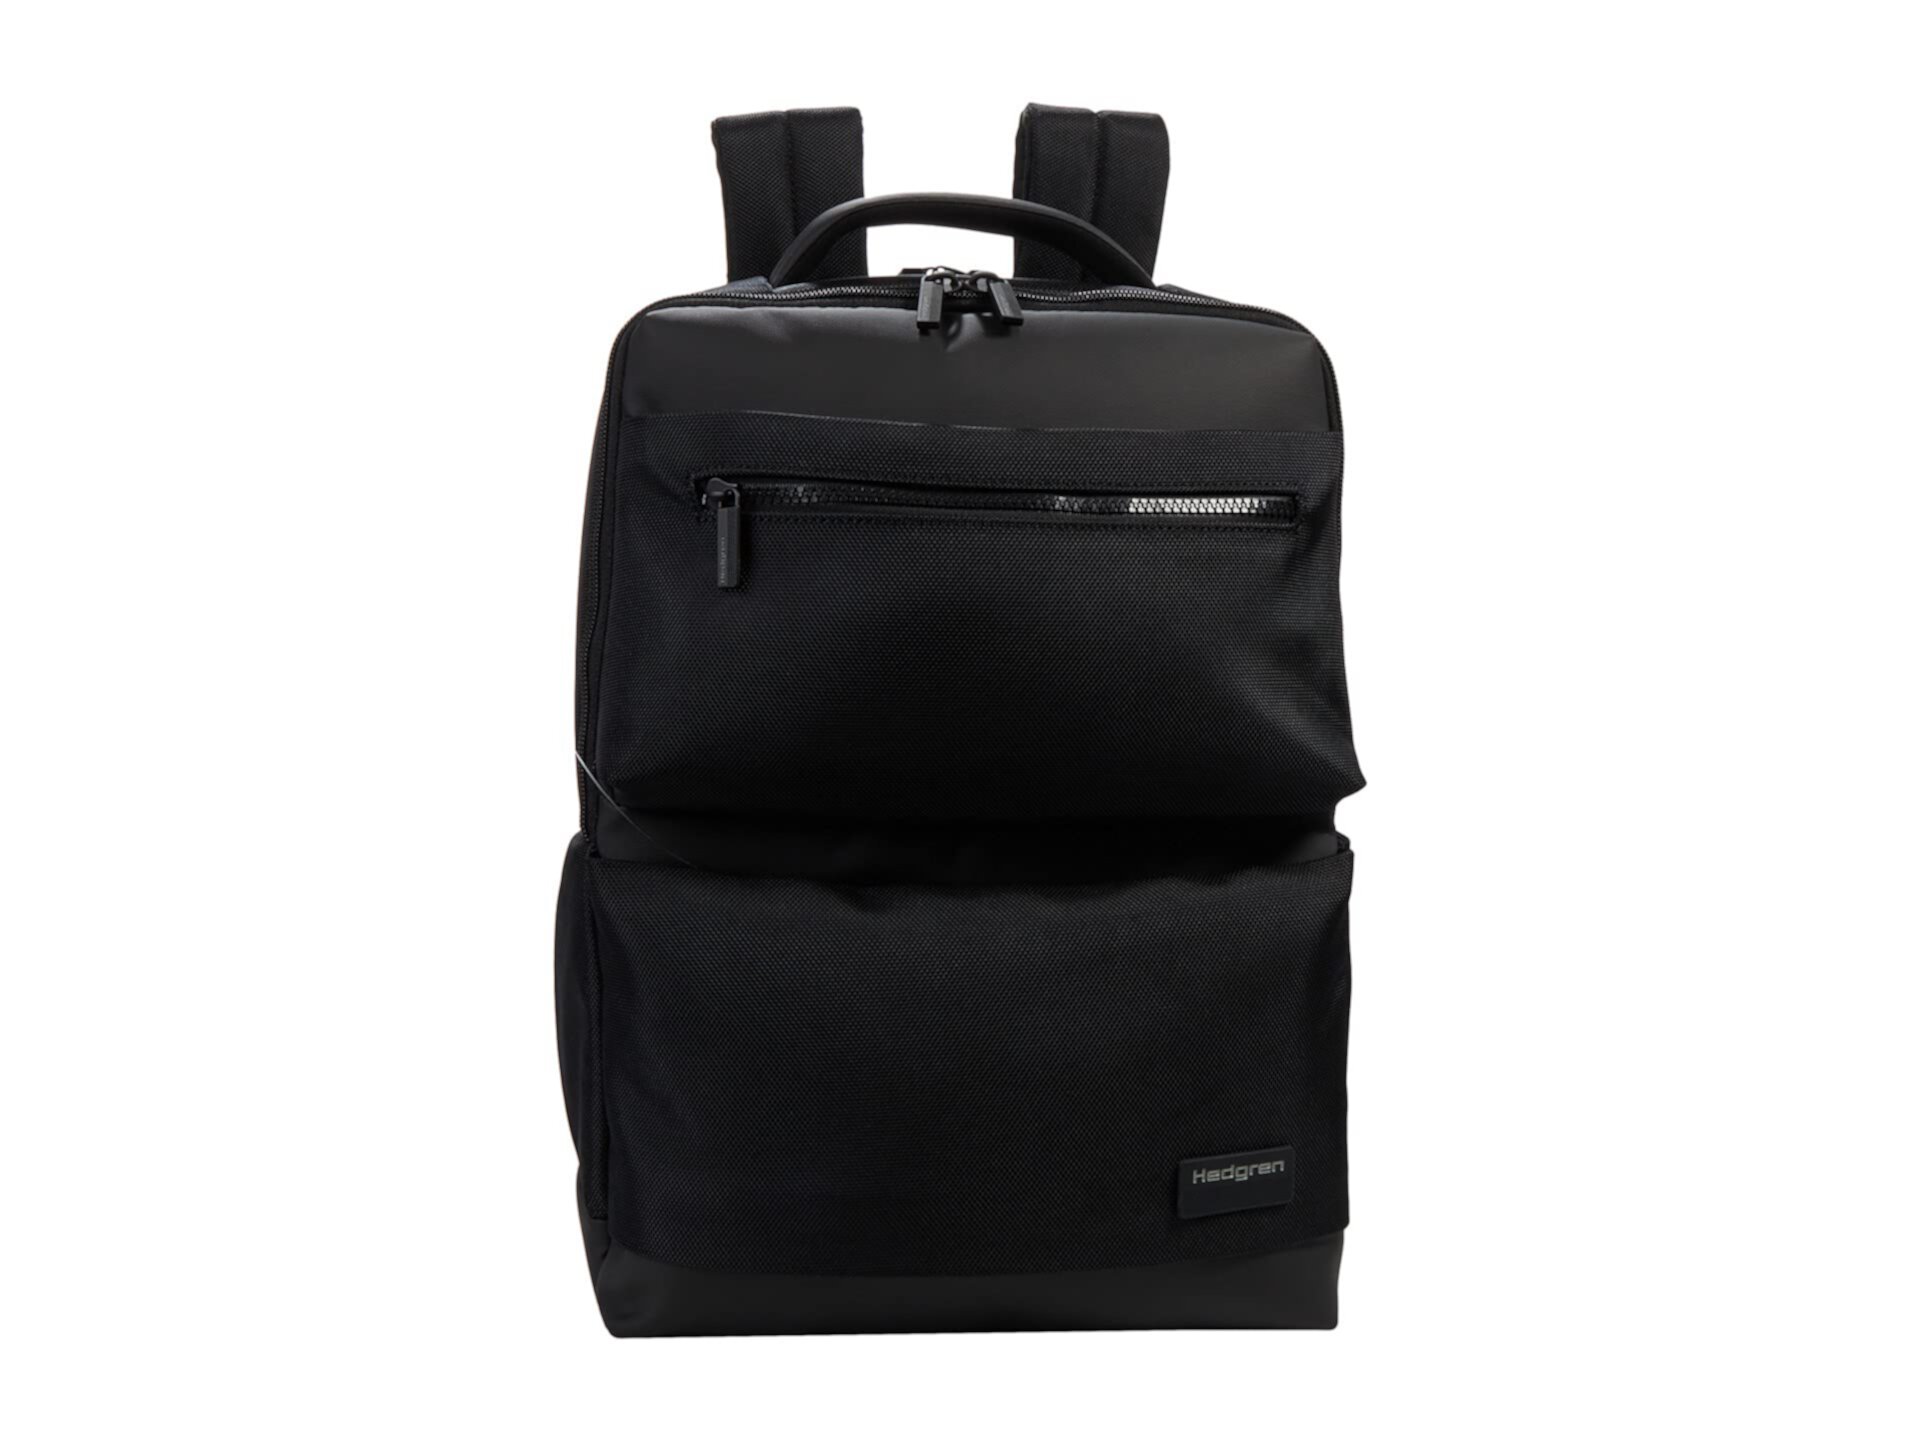 15,6-дюймовый рюкзак Next для ноутбука с 2 отсеками Hedgren